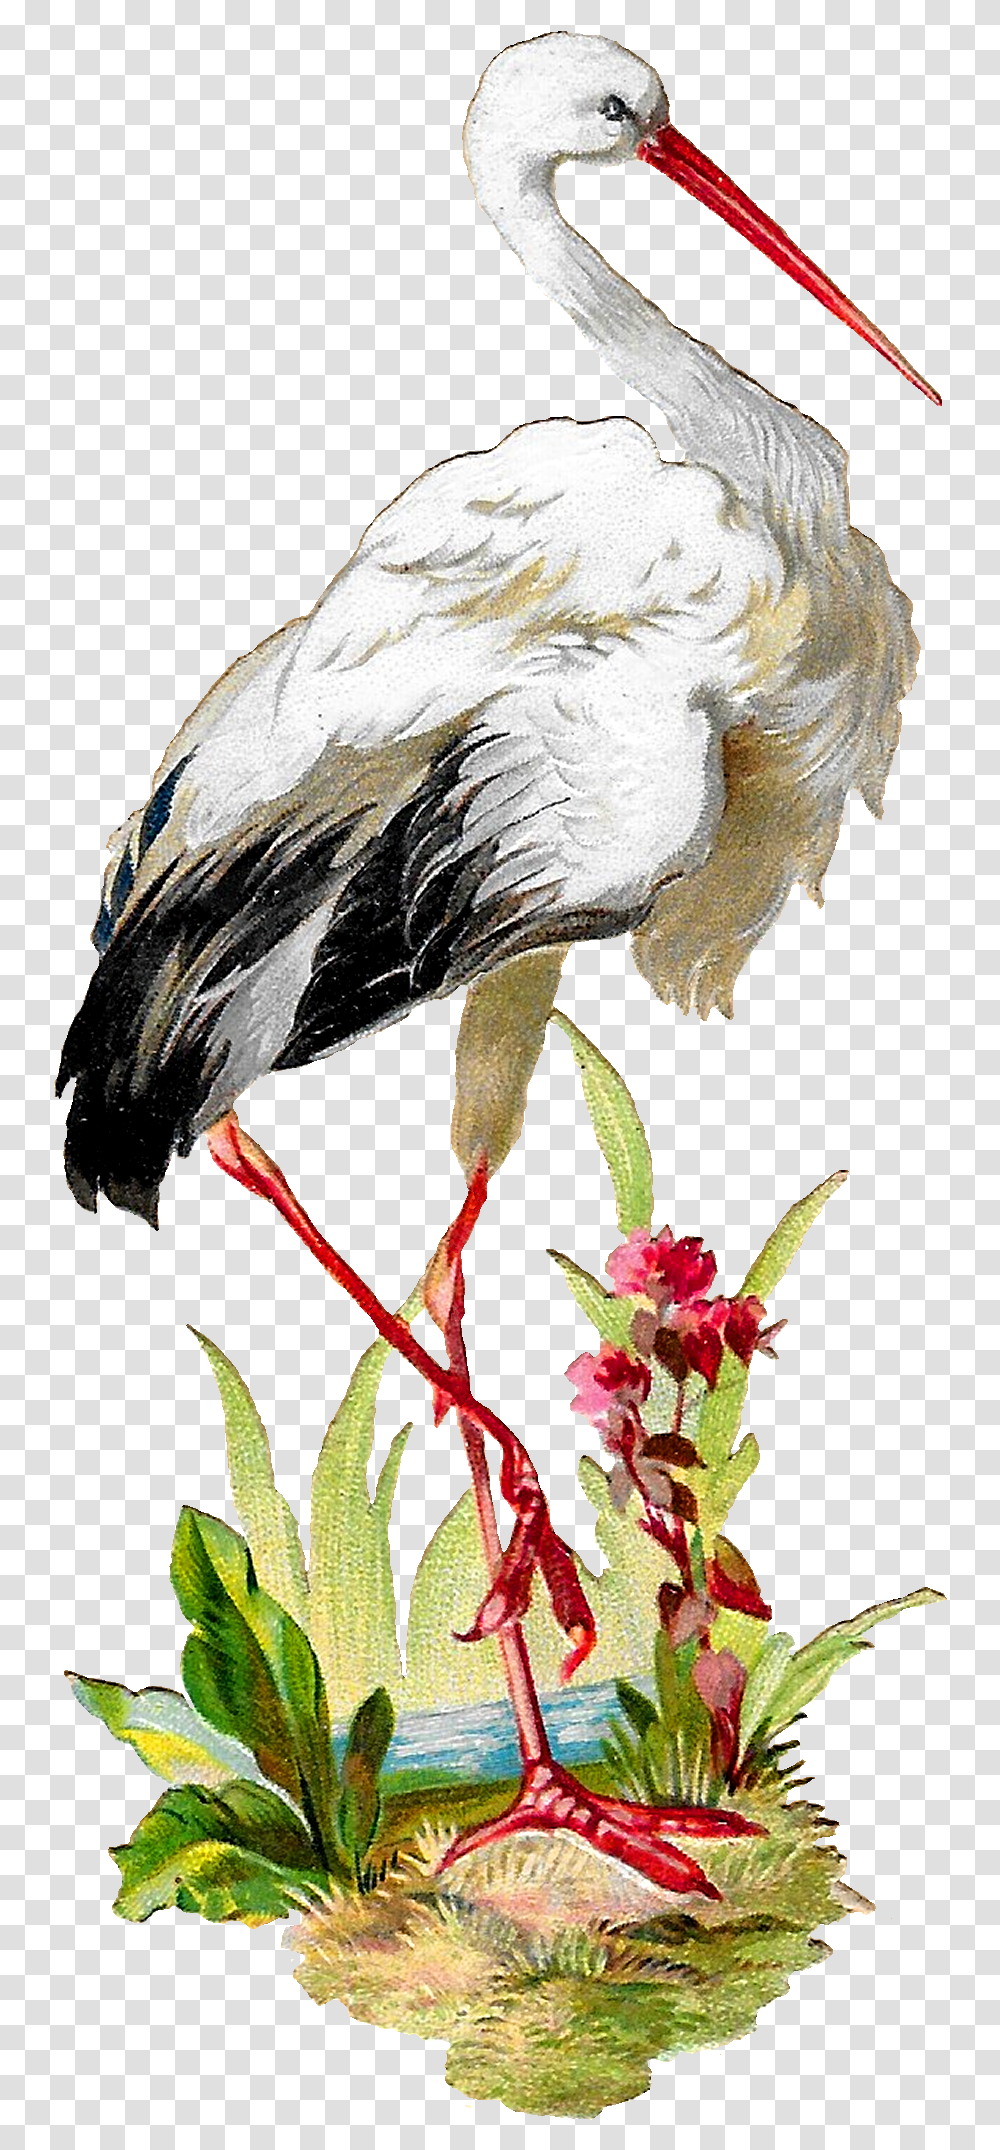 Antique Images Vintage White Stork Bird Clipart Artwork Stork Vintage, Animal, Vulture, Beak, Crane Bird Transparent Png